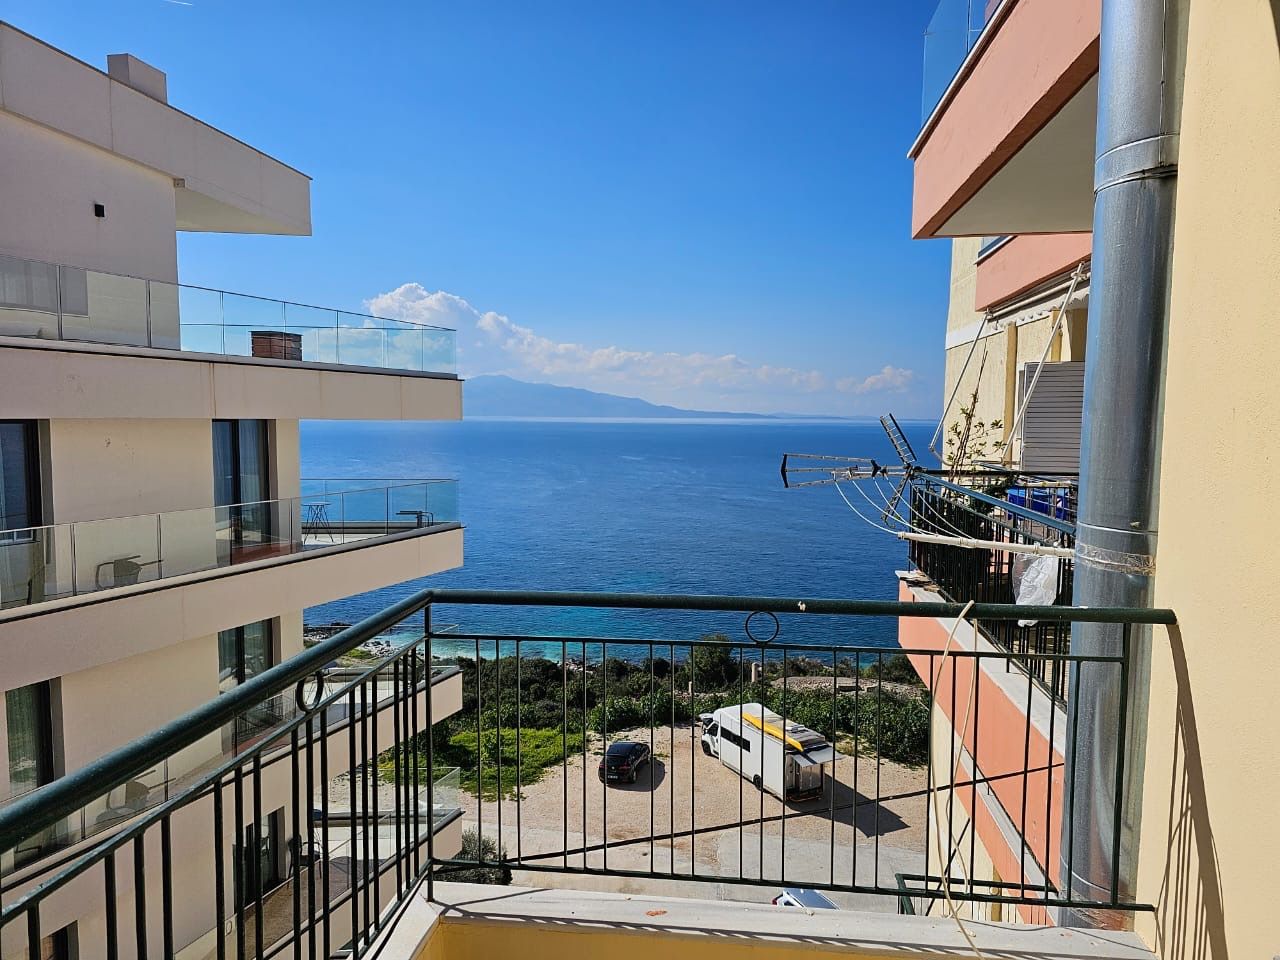  Na sprzedaż nieruchomość w Albanii w Sarandzie, z pięknym widokiem na morze, położona w bardzo dobrej pozycji